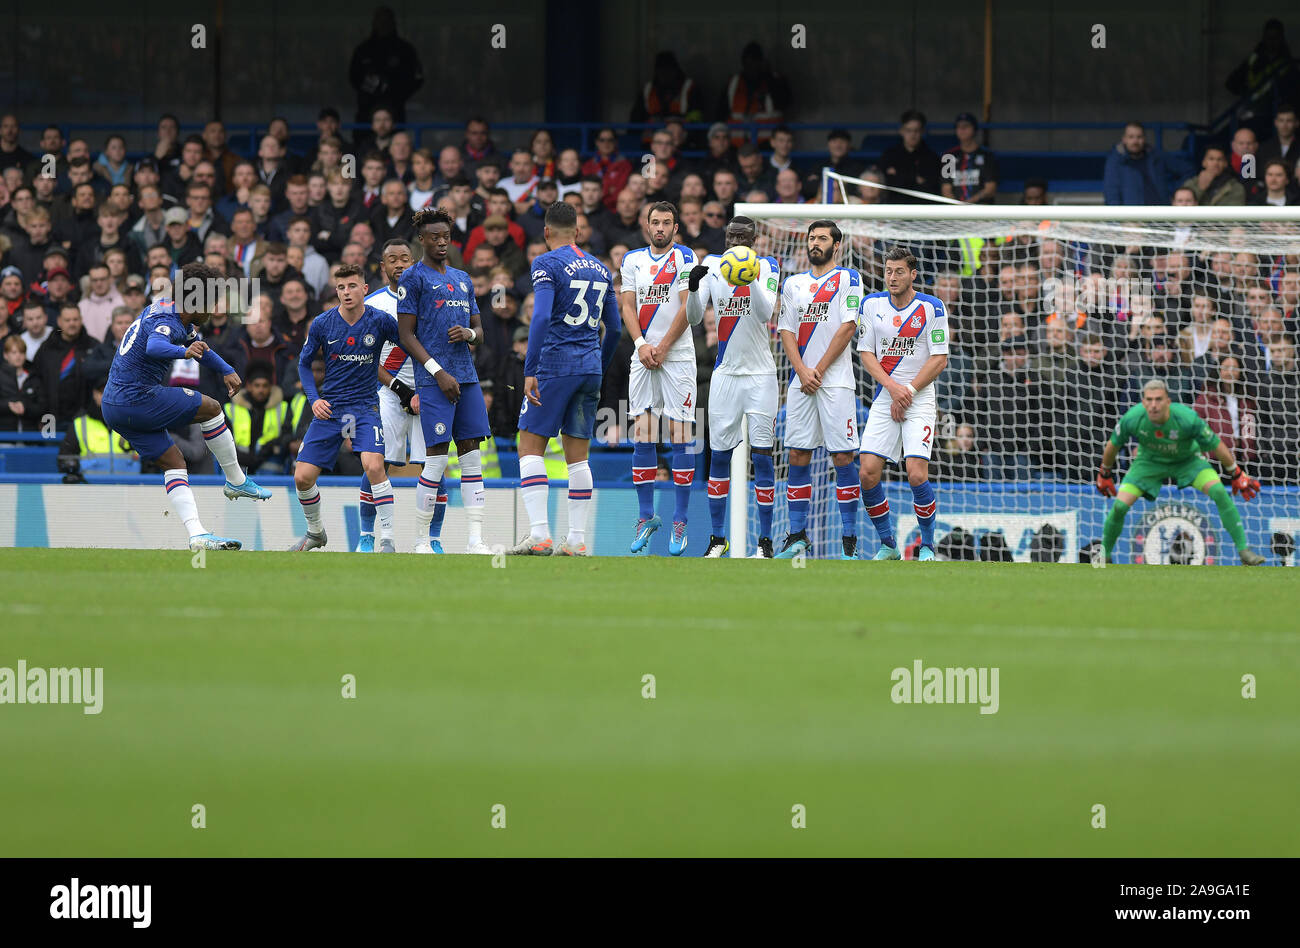 William von Chelsea feuert einen Freistoß am Ziel während der Chelsea vs Crystal Palace Premier League match nur an der Stamford Bridge - Redaktionelle Verwendung, Lizenz Stockfoto